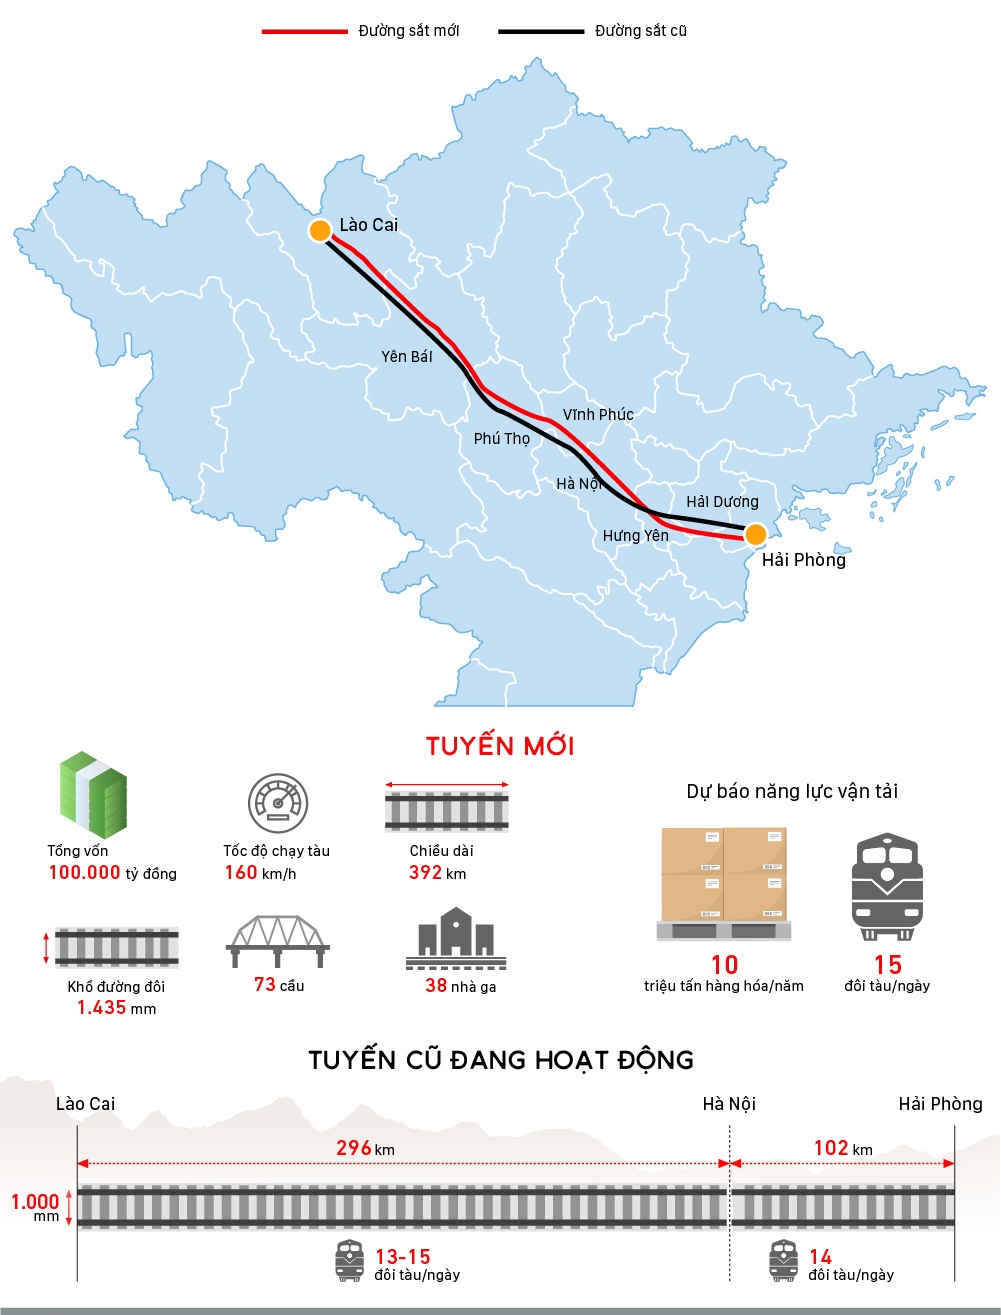 Hình ảnh Inforaphic thể hiện quy hoạch tuyến đường sắt Lào Cai - Hà Nội - Hải Phòng về hướng tuyến, thiết kế, vốn và so sánh với tuyến cũ đang hoạt động